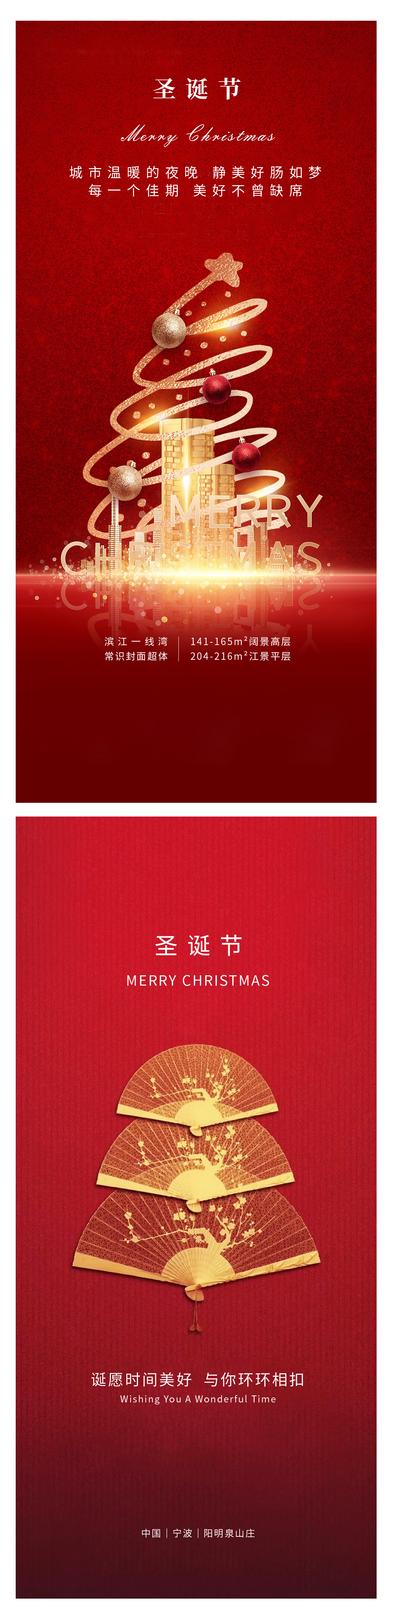 南门网 广告 海报 节日 圣诞节 圣诞树 花火 建筑 擅自 金色